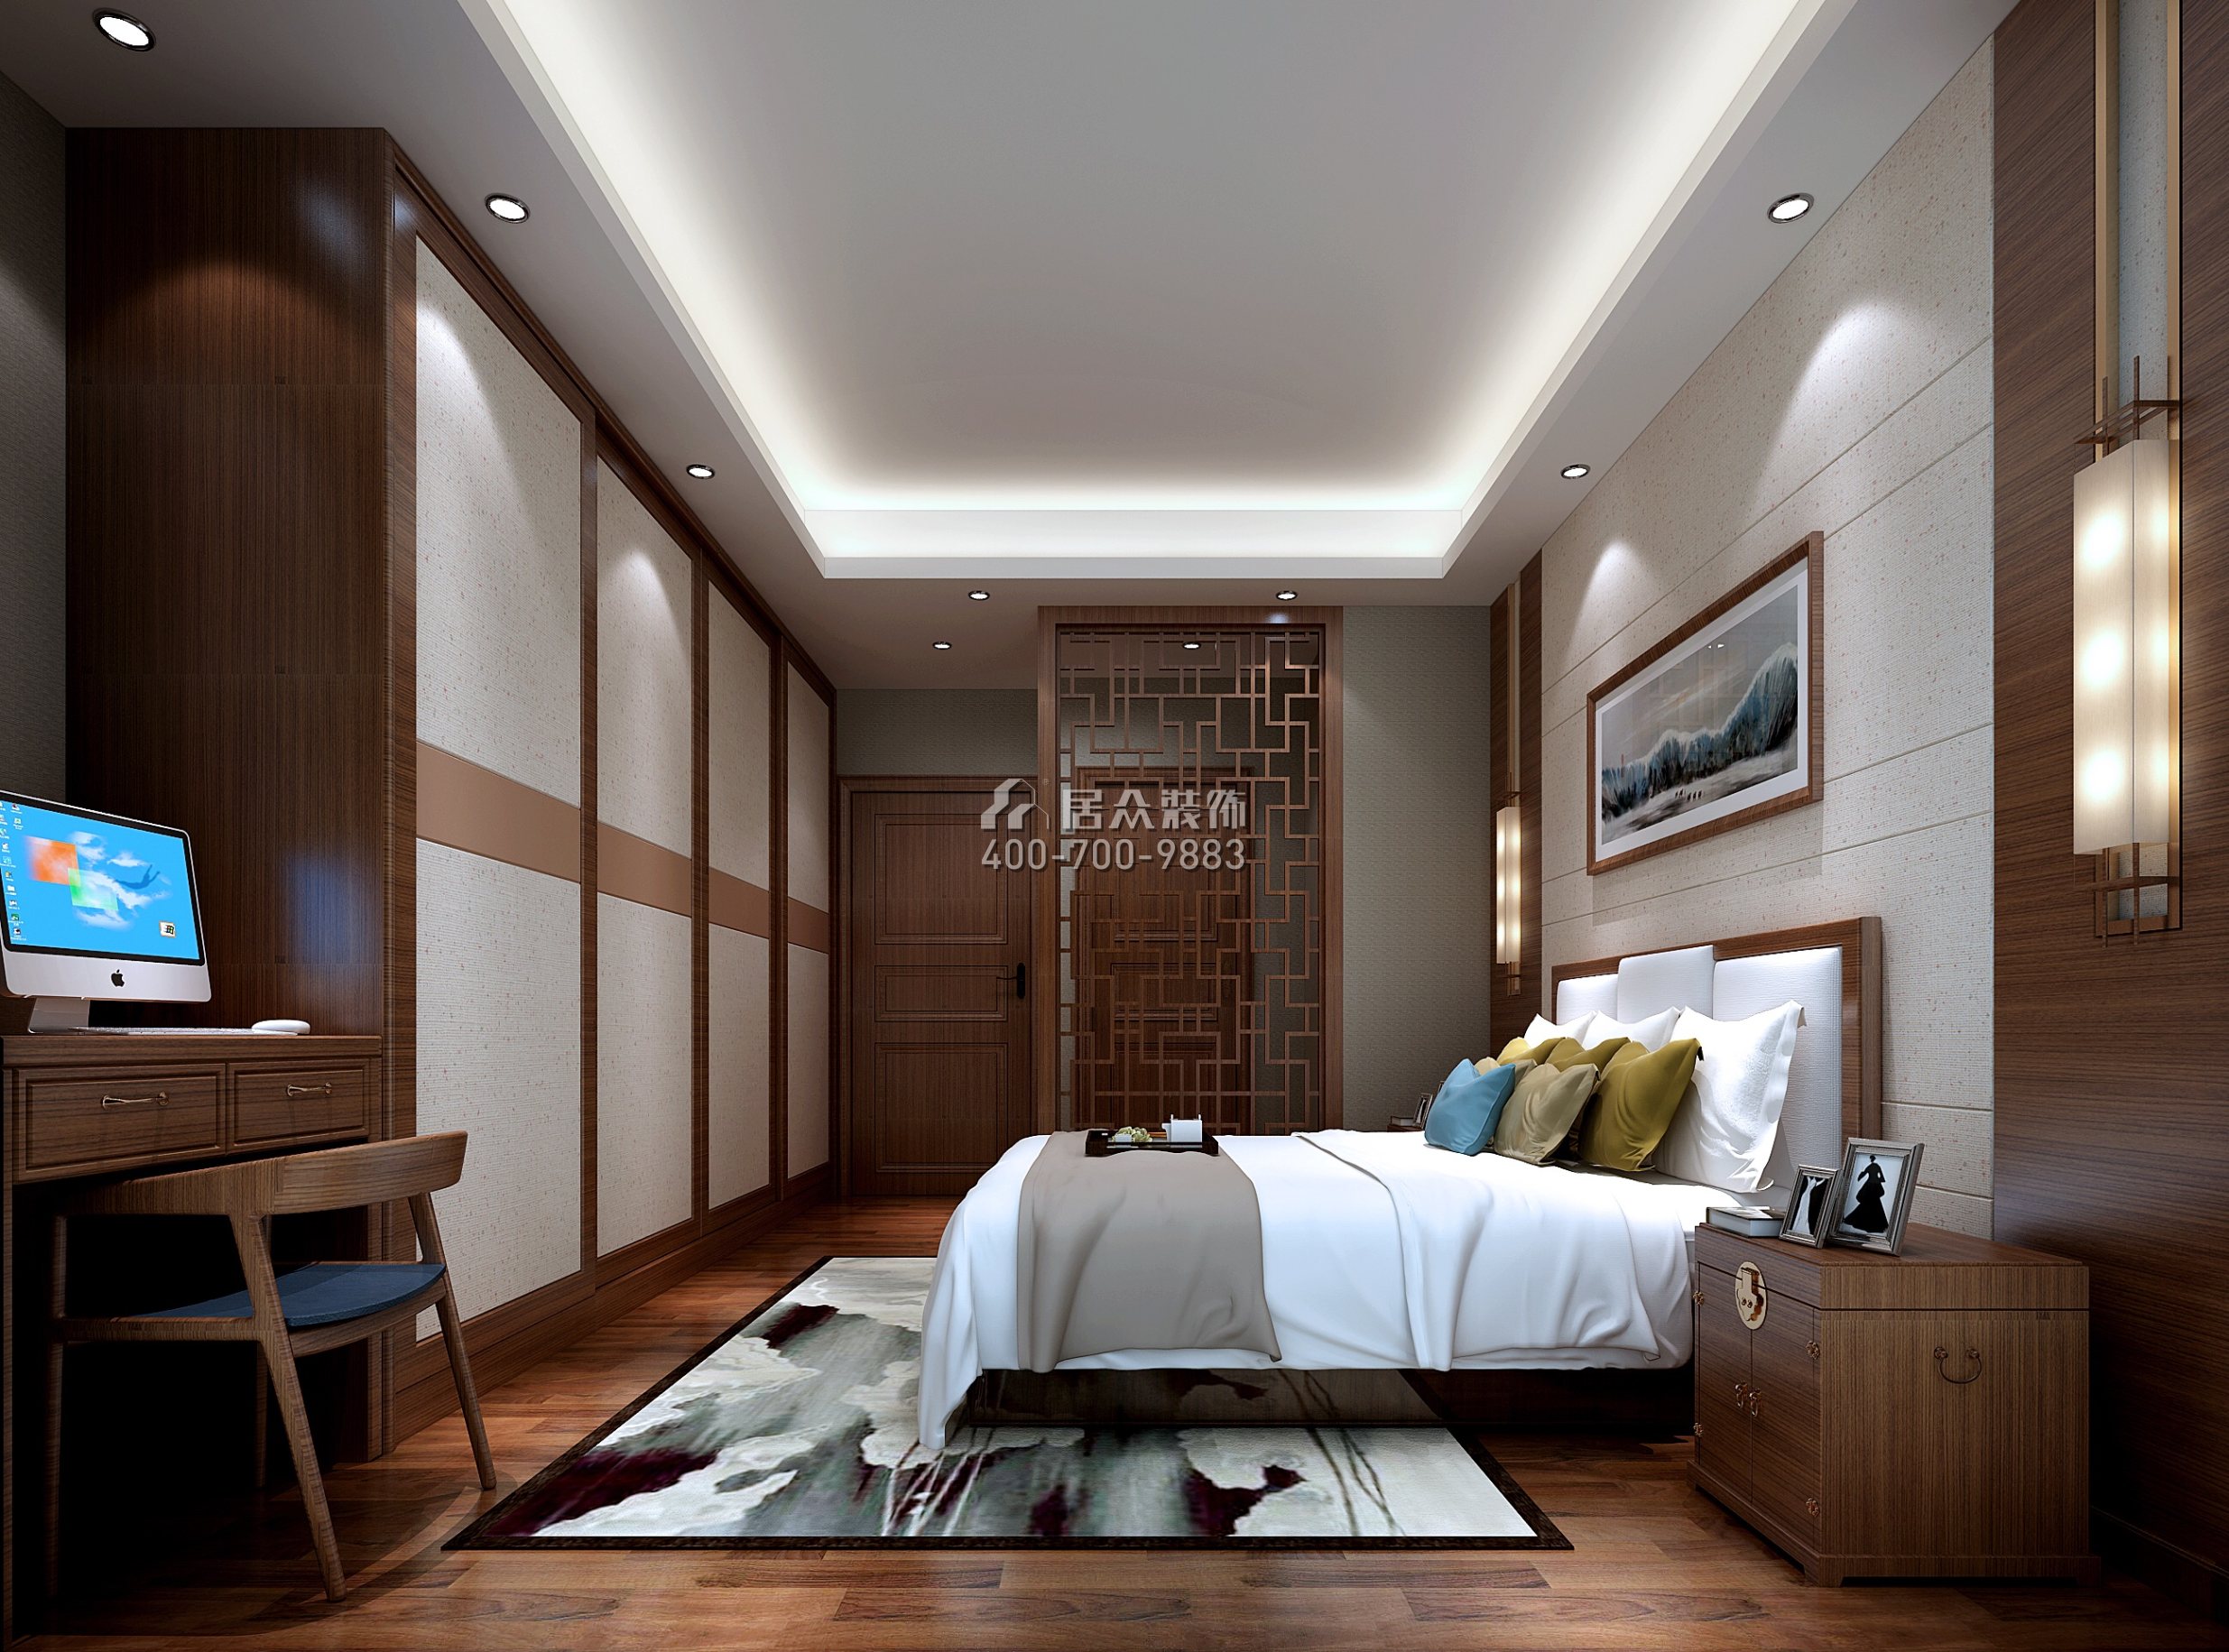 中洲·中央公园151平方米中式风格平层户型卧室装修效果图